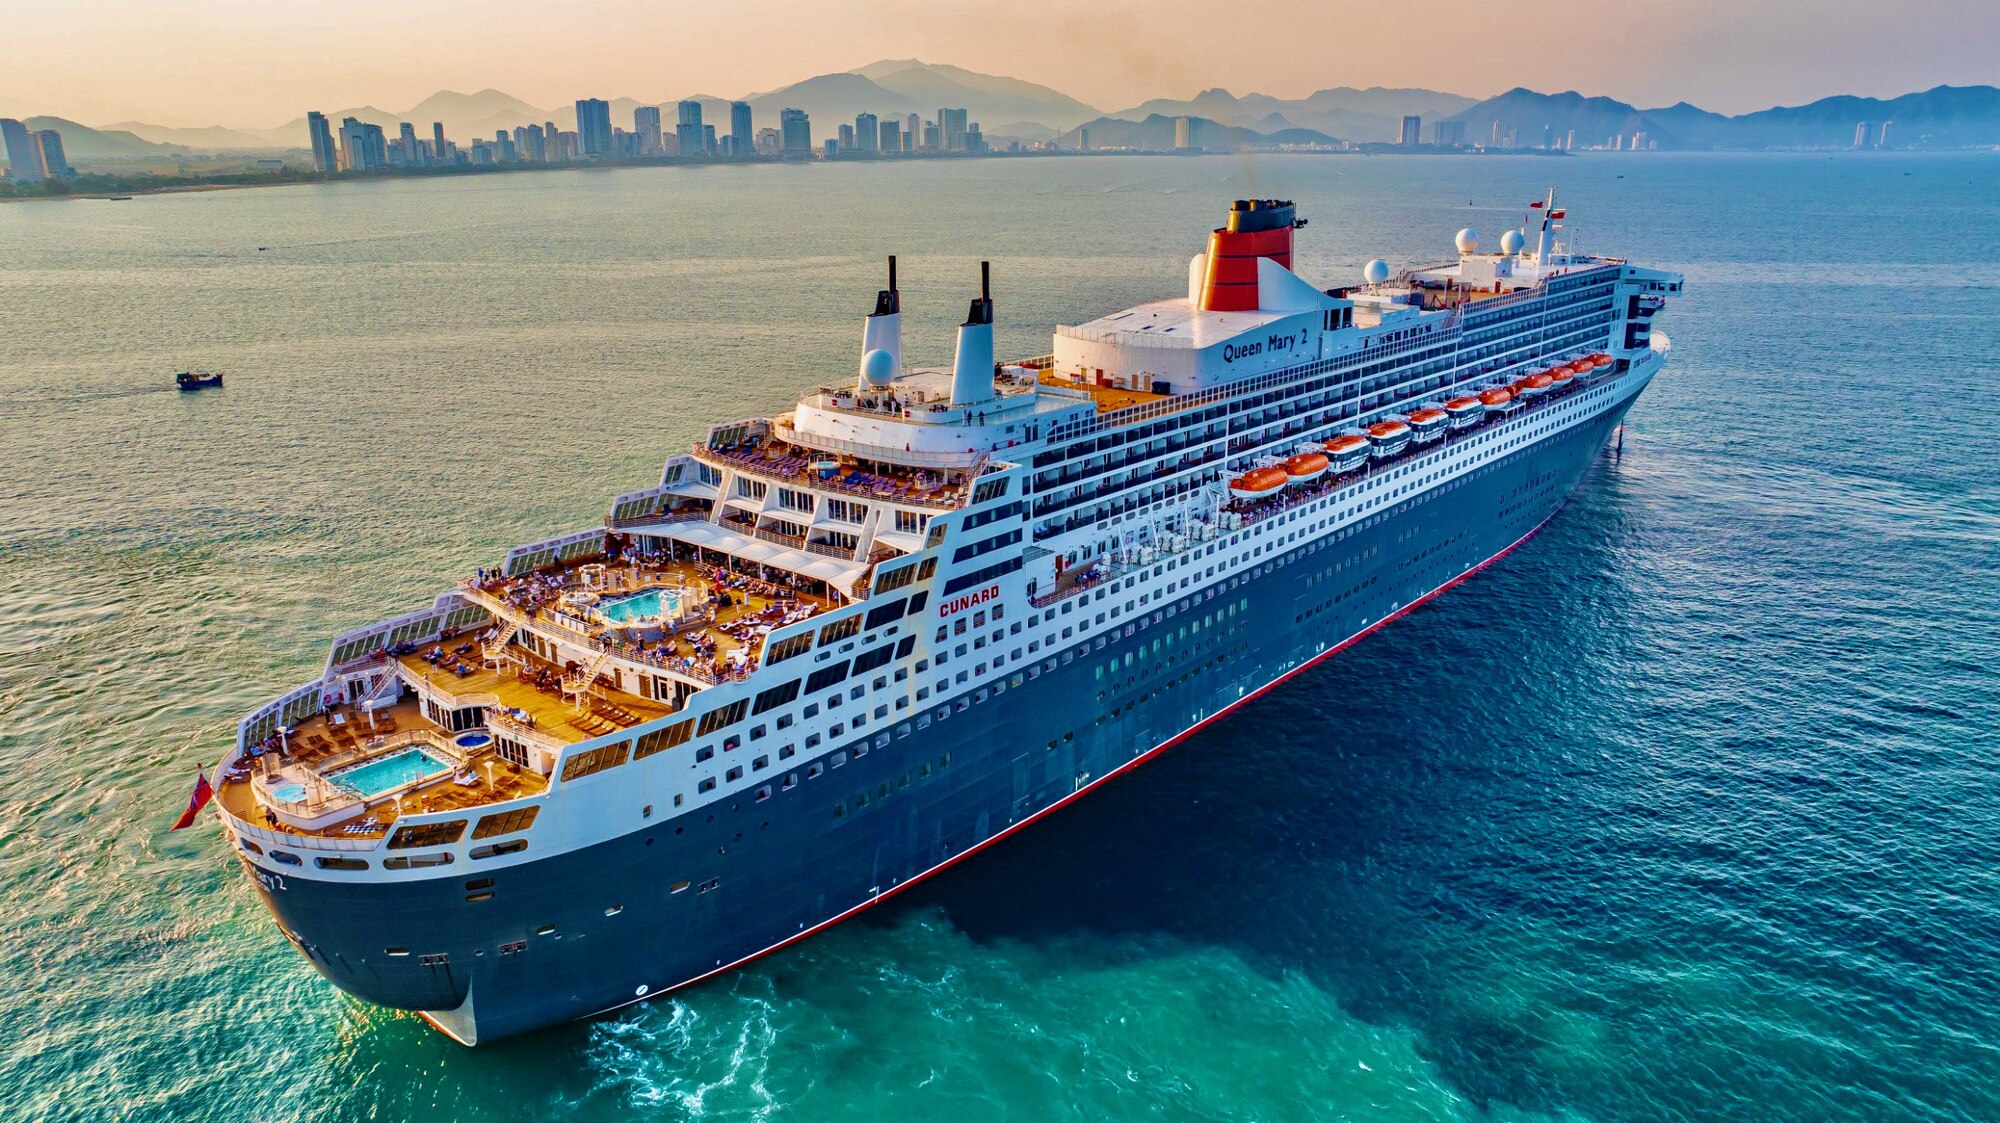 Tàu Queen Mary 2 đến Nha Trang hôm 18-3 phải neo ngoài vịnh Nha Trang - Ảnh: QUỐC BẢO